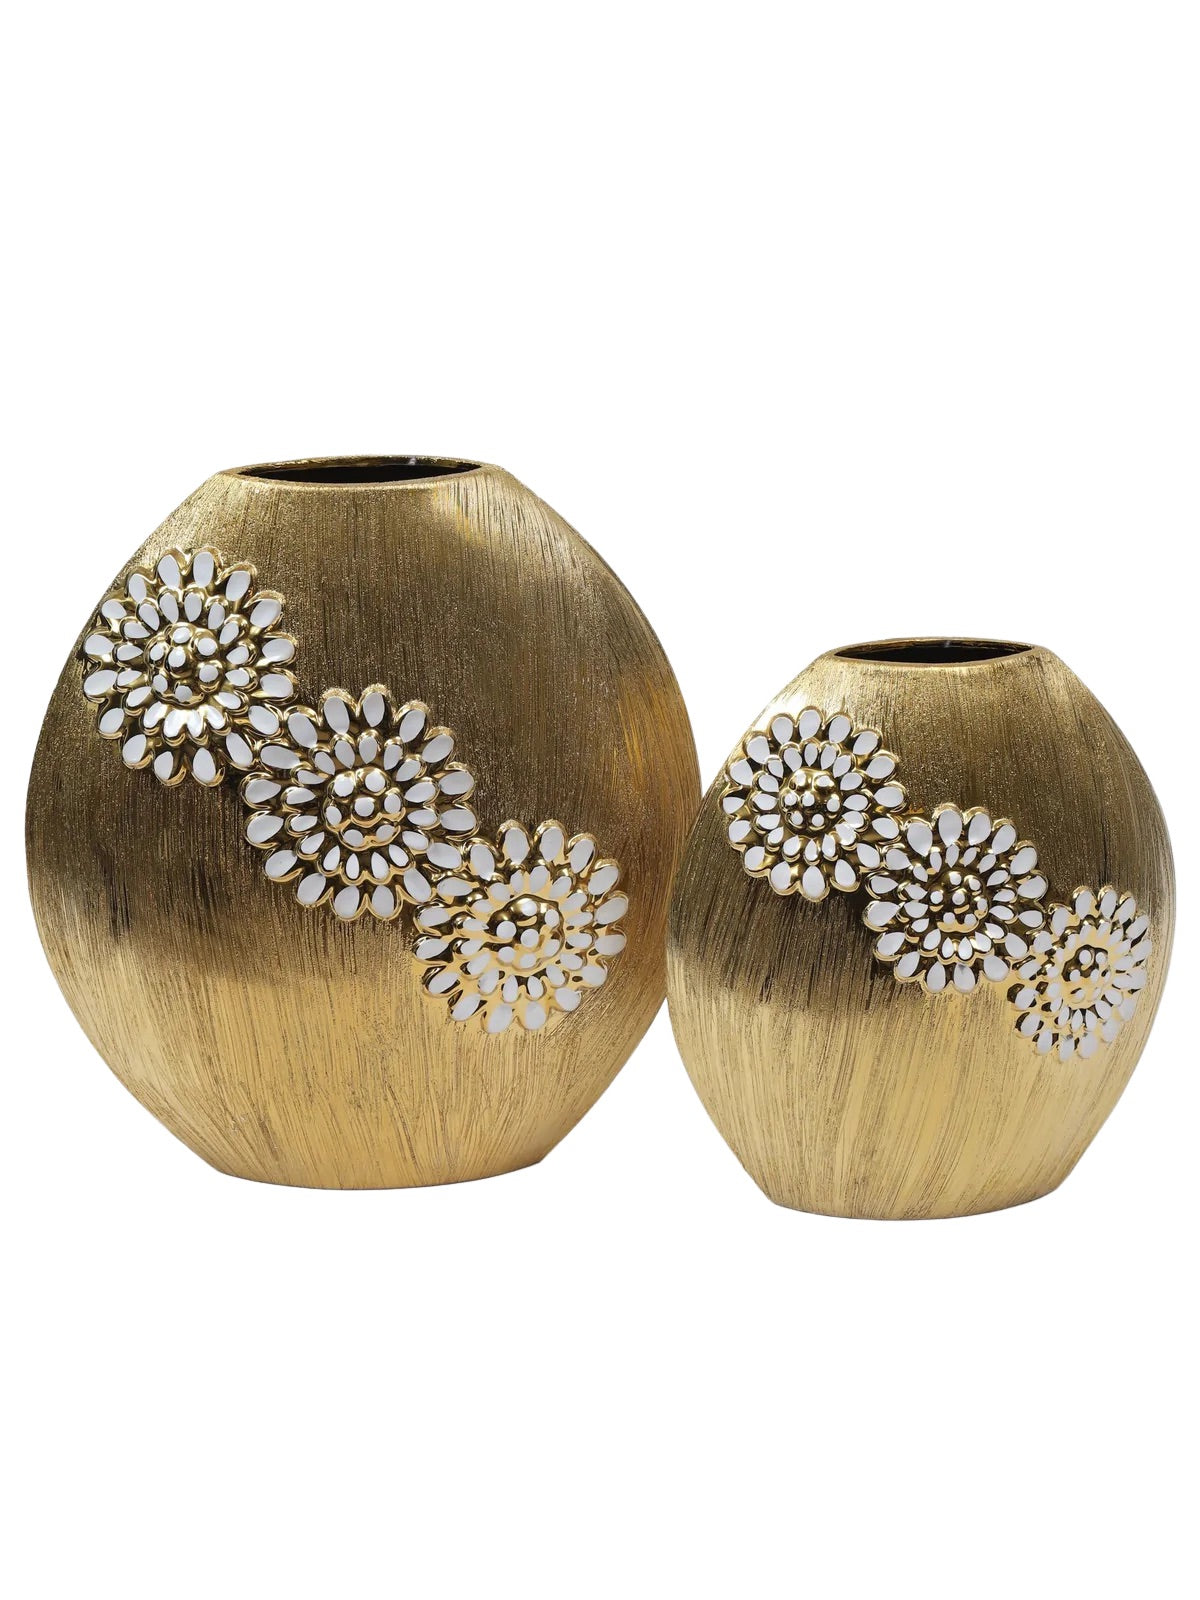 Luxury Round Matte Gold Ceramic Vase With White Textured Flower Design, 2 Sizes - KYA Home Decor. 